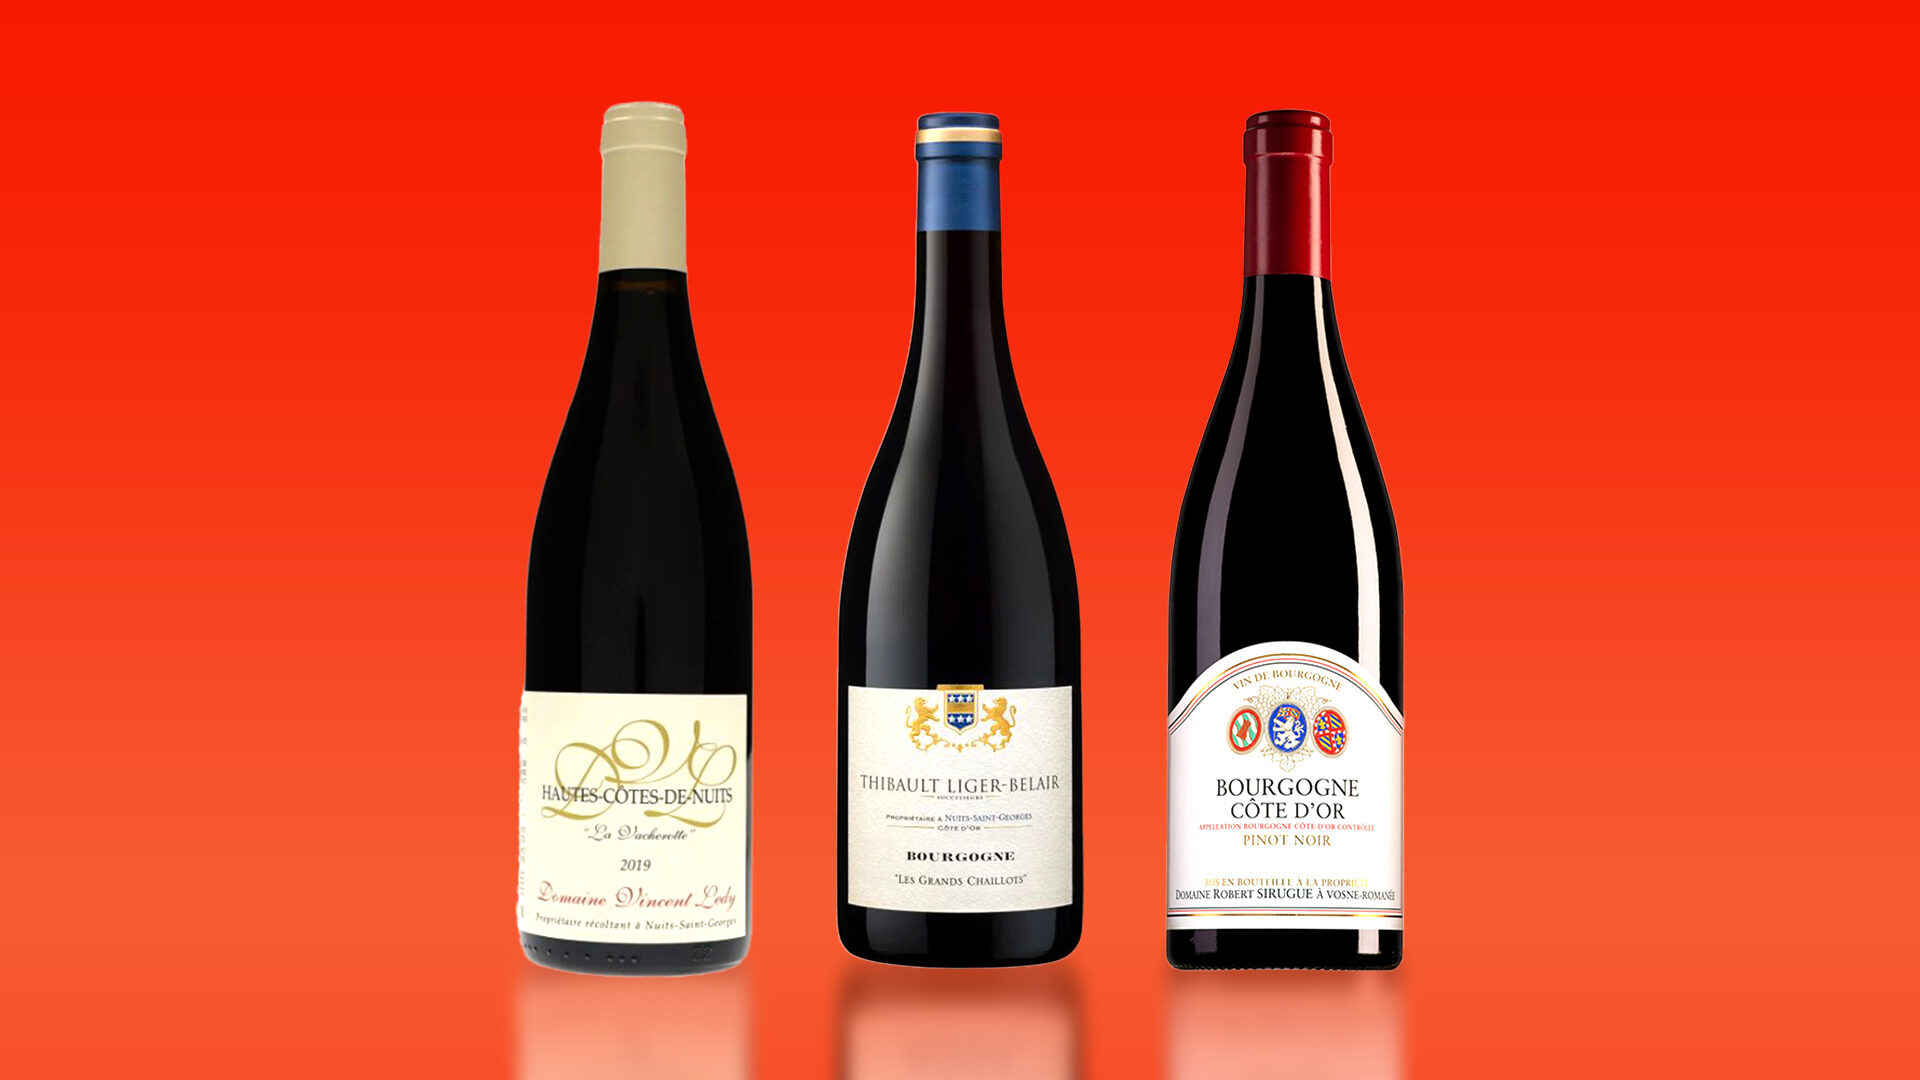 빌라주급을 위협하는 고품질 가성비 부르고뉴 레드 와인 3